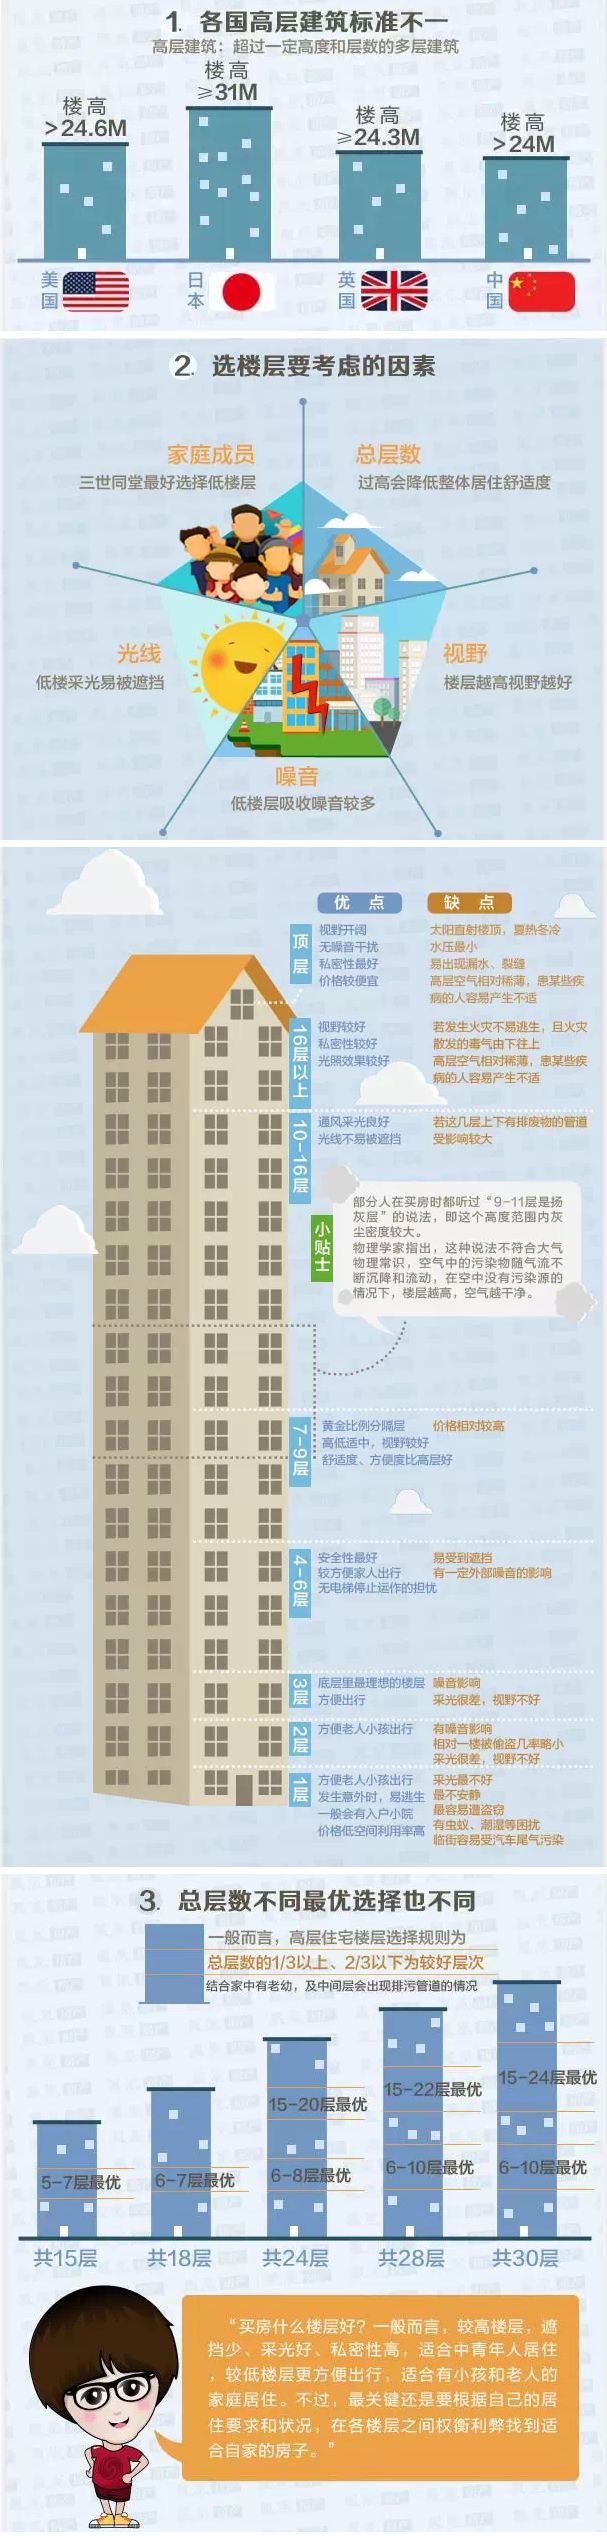 32层高层住宅买几楼好_34层高层住宅为何十八层没人要_高层住宅几层最好